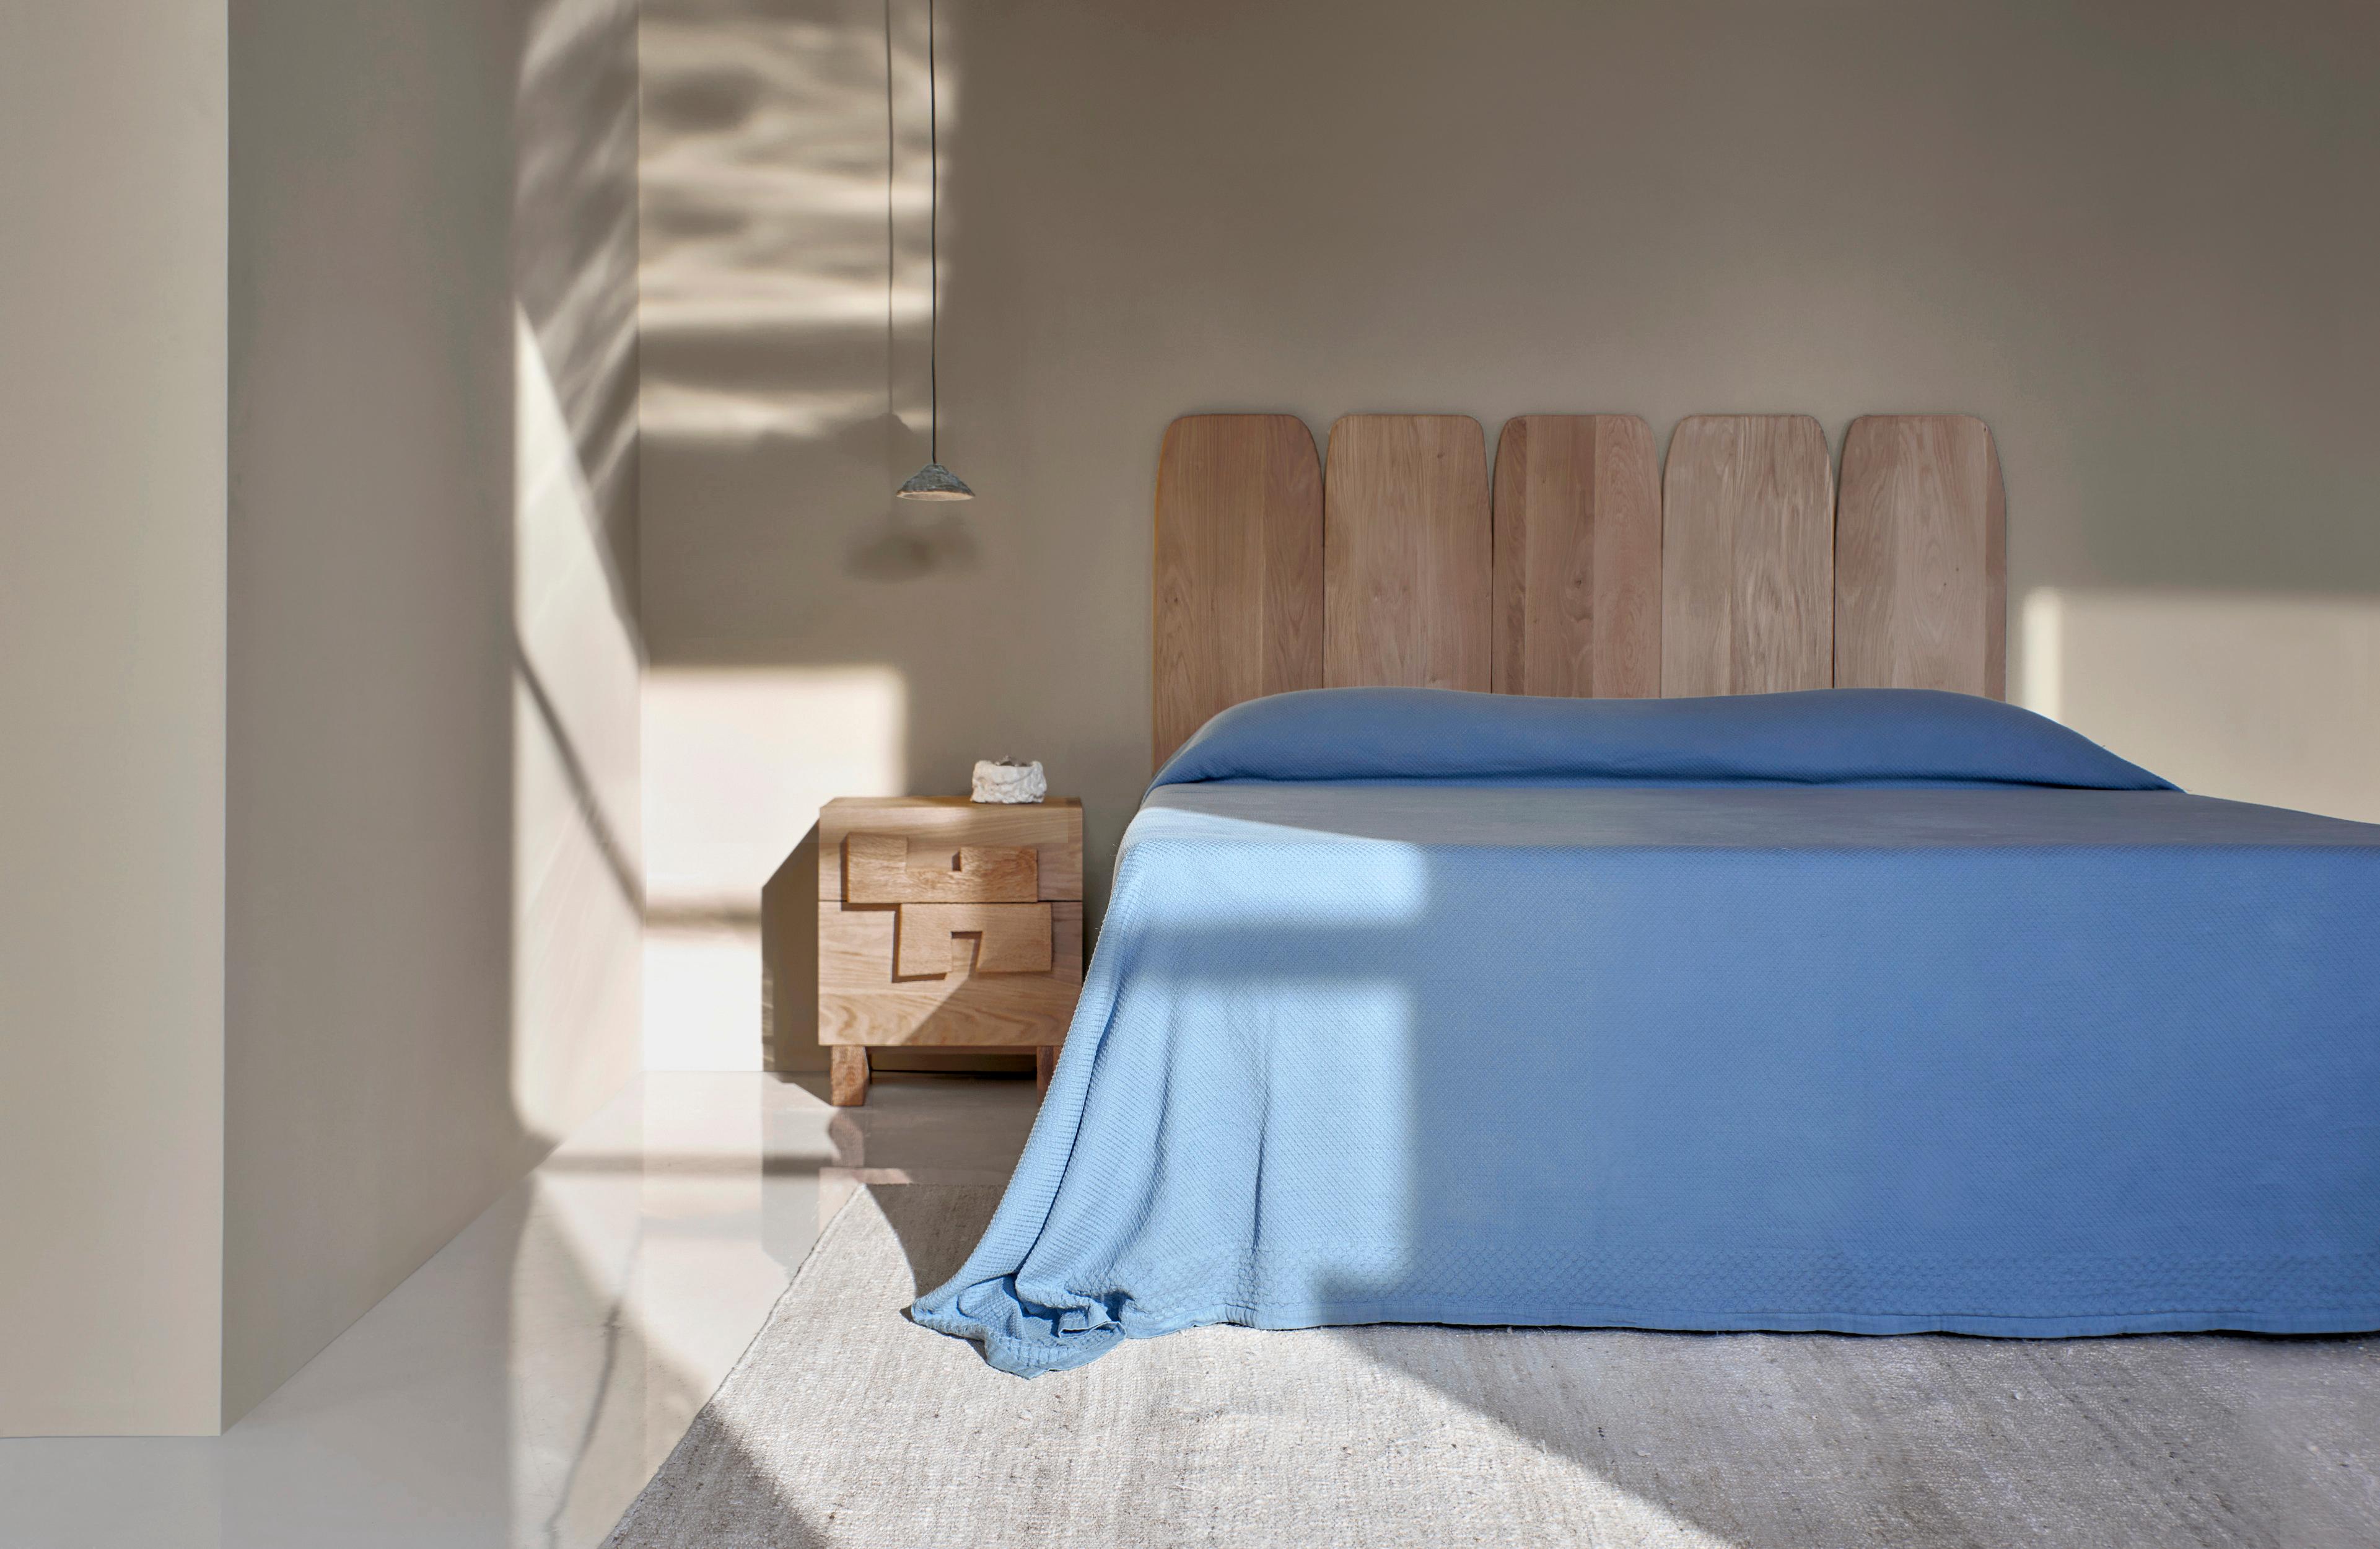 Table de chevet Douro
Conçu par le project 213A en 2023

Fabriqué à la main par des artisans qualifiés en chêne massif. La table de chevet comporte deux tiroirs avec des poignées et des pieds décorés d'une texture sculptée à la main. 

Dimensions